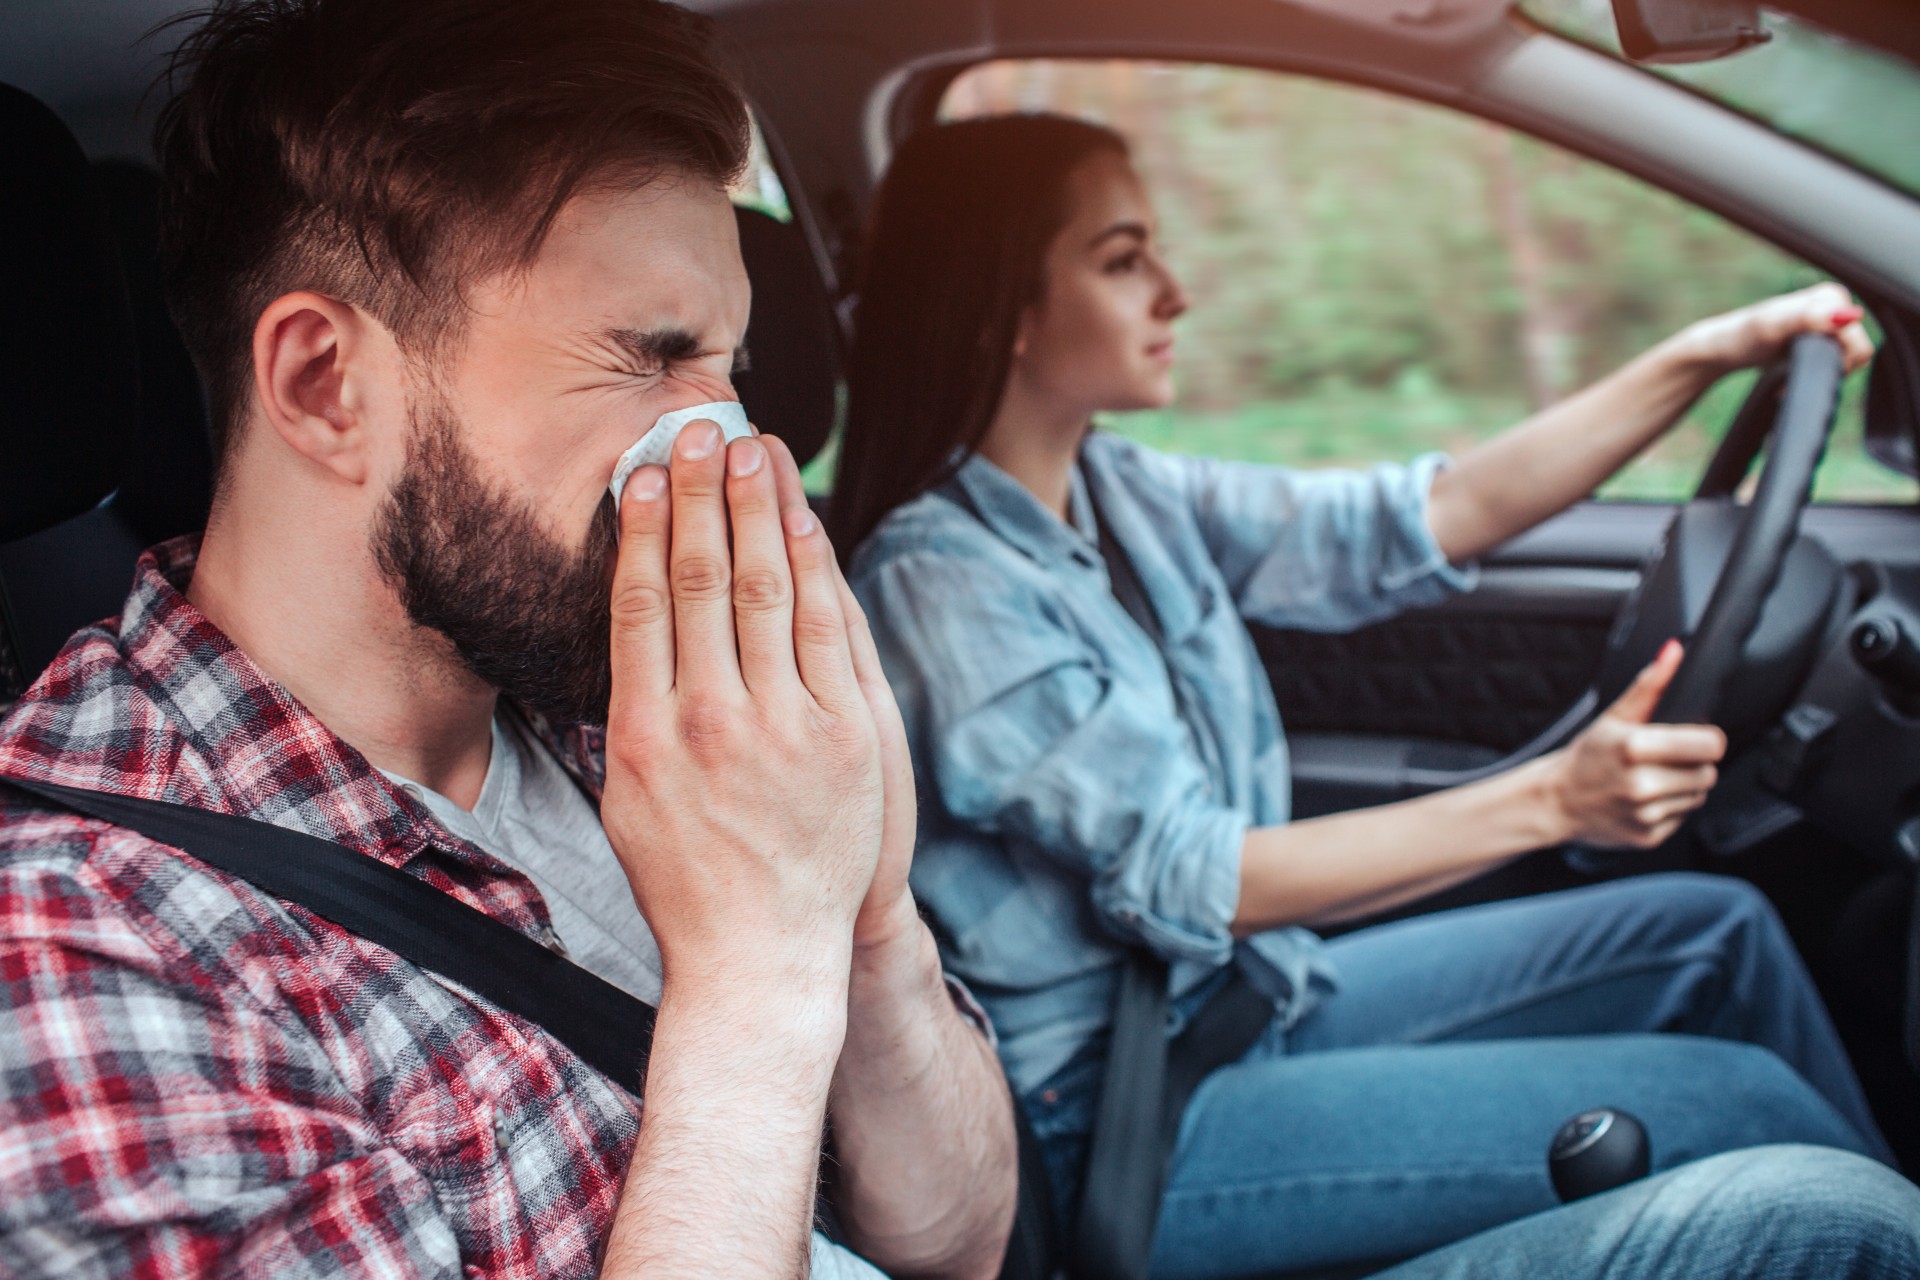 Klimaanlagen-Reinigung im Auto ist auch für Allergiker wichtig